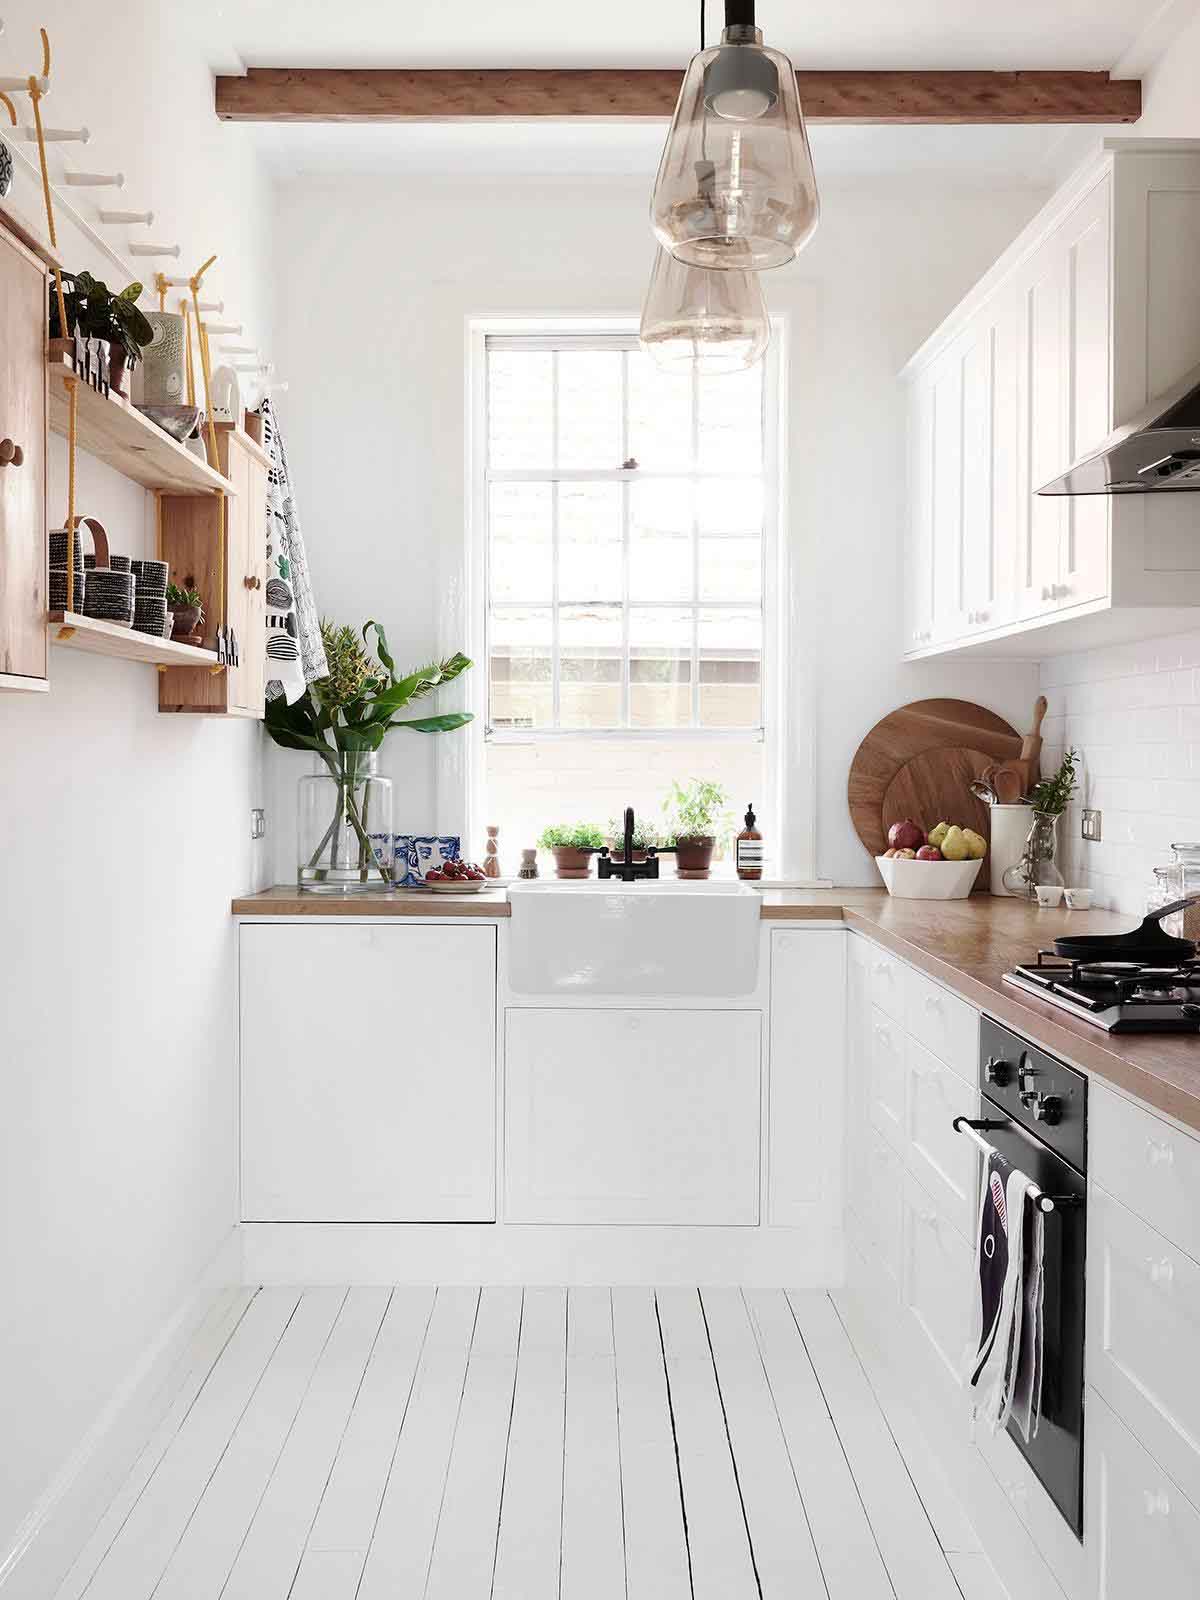 Không chỉ tạo ra không gian đẹp mắt mà sắp xếp phòng bếp gọn gàng còn giúp bạn tiết kiệm thời gian và tiện ích hơn trong việc nấu nướng. Hãy cùng xem ảnh để thấy tác dụng của việc sắp xếp phòng bếp.